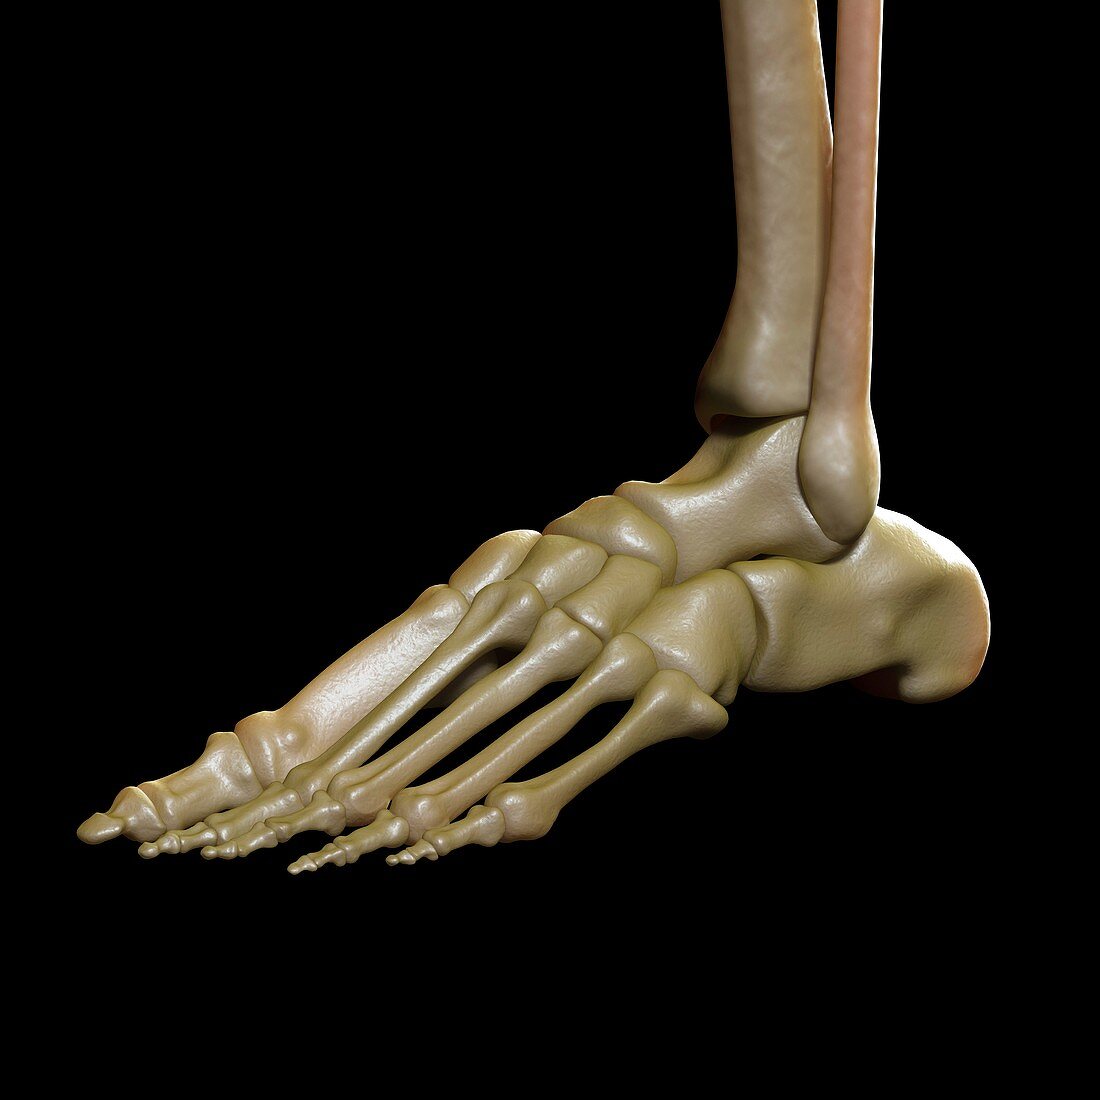 The Foot Bones, artwork